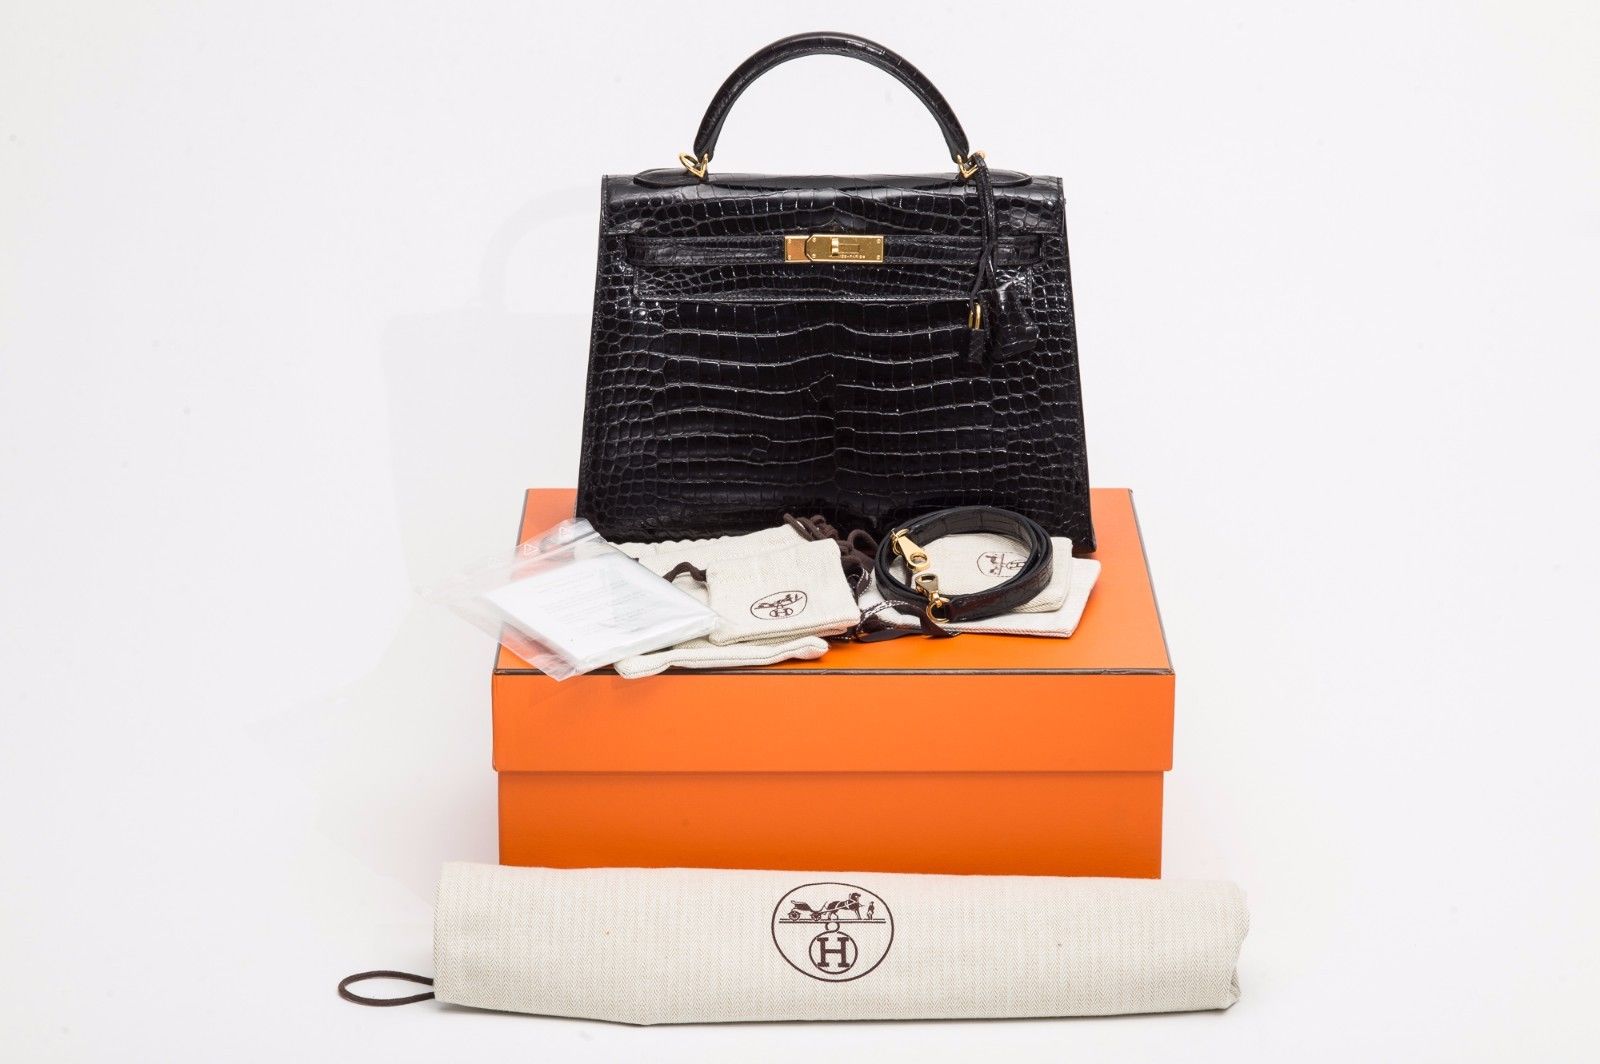 Hermès : 5 sacs Birkin les plus chers récemment vendus sur eBay !